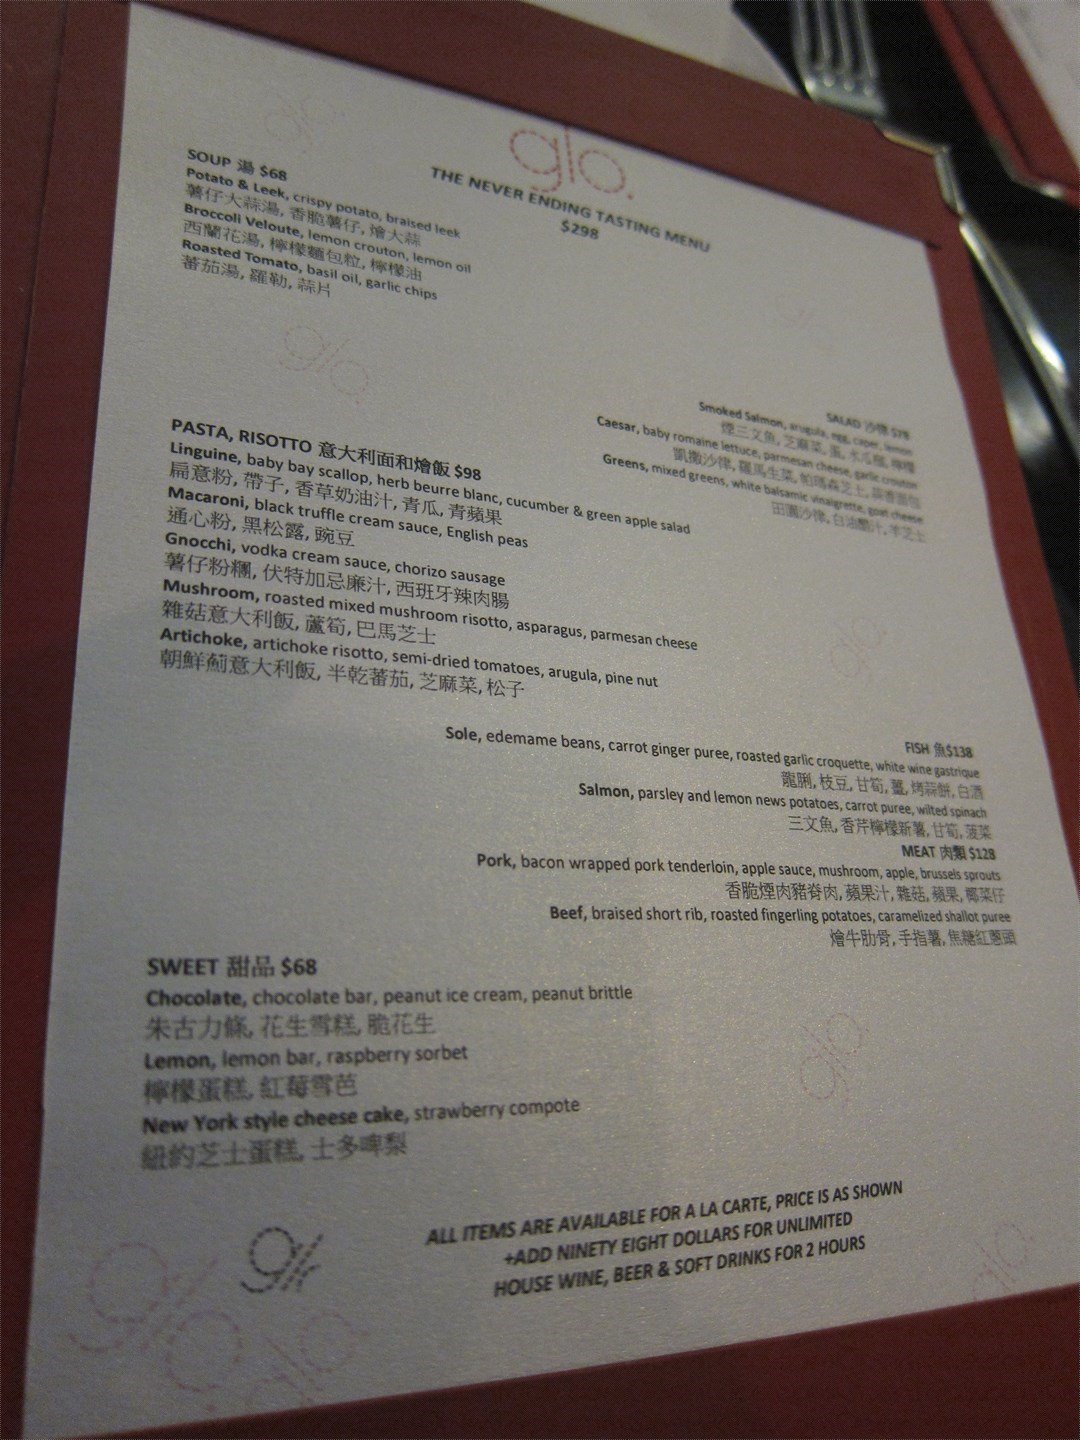 Never Ending Menu... - Glo Restaurant + Lounge's photo in Sheung Wan Hong  Kong | OpenRice Hong Kong